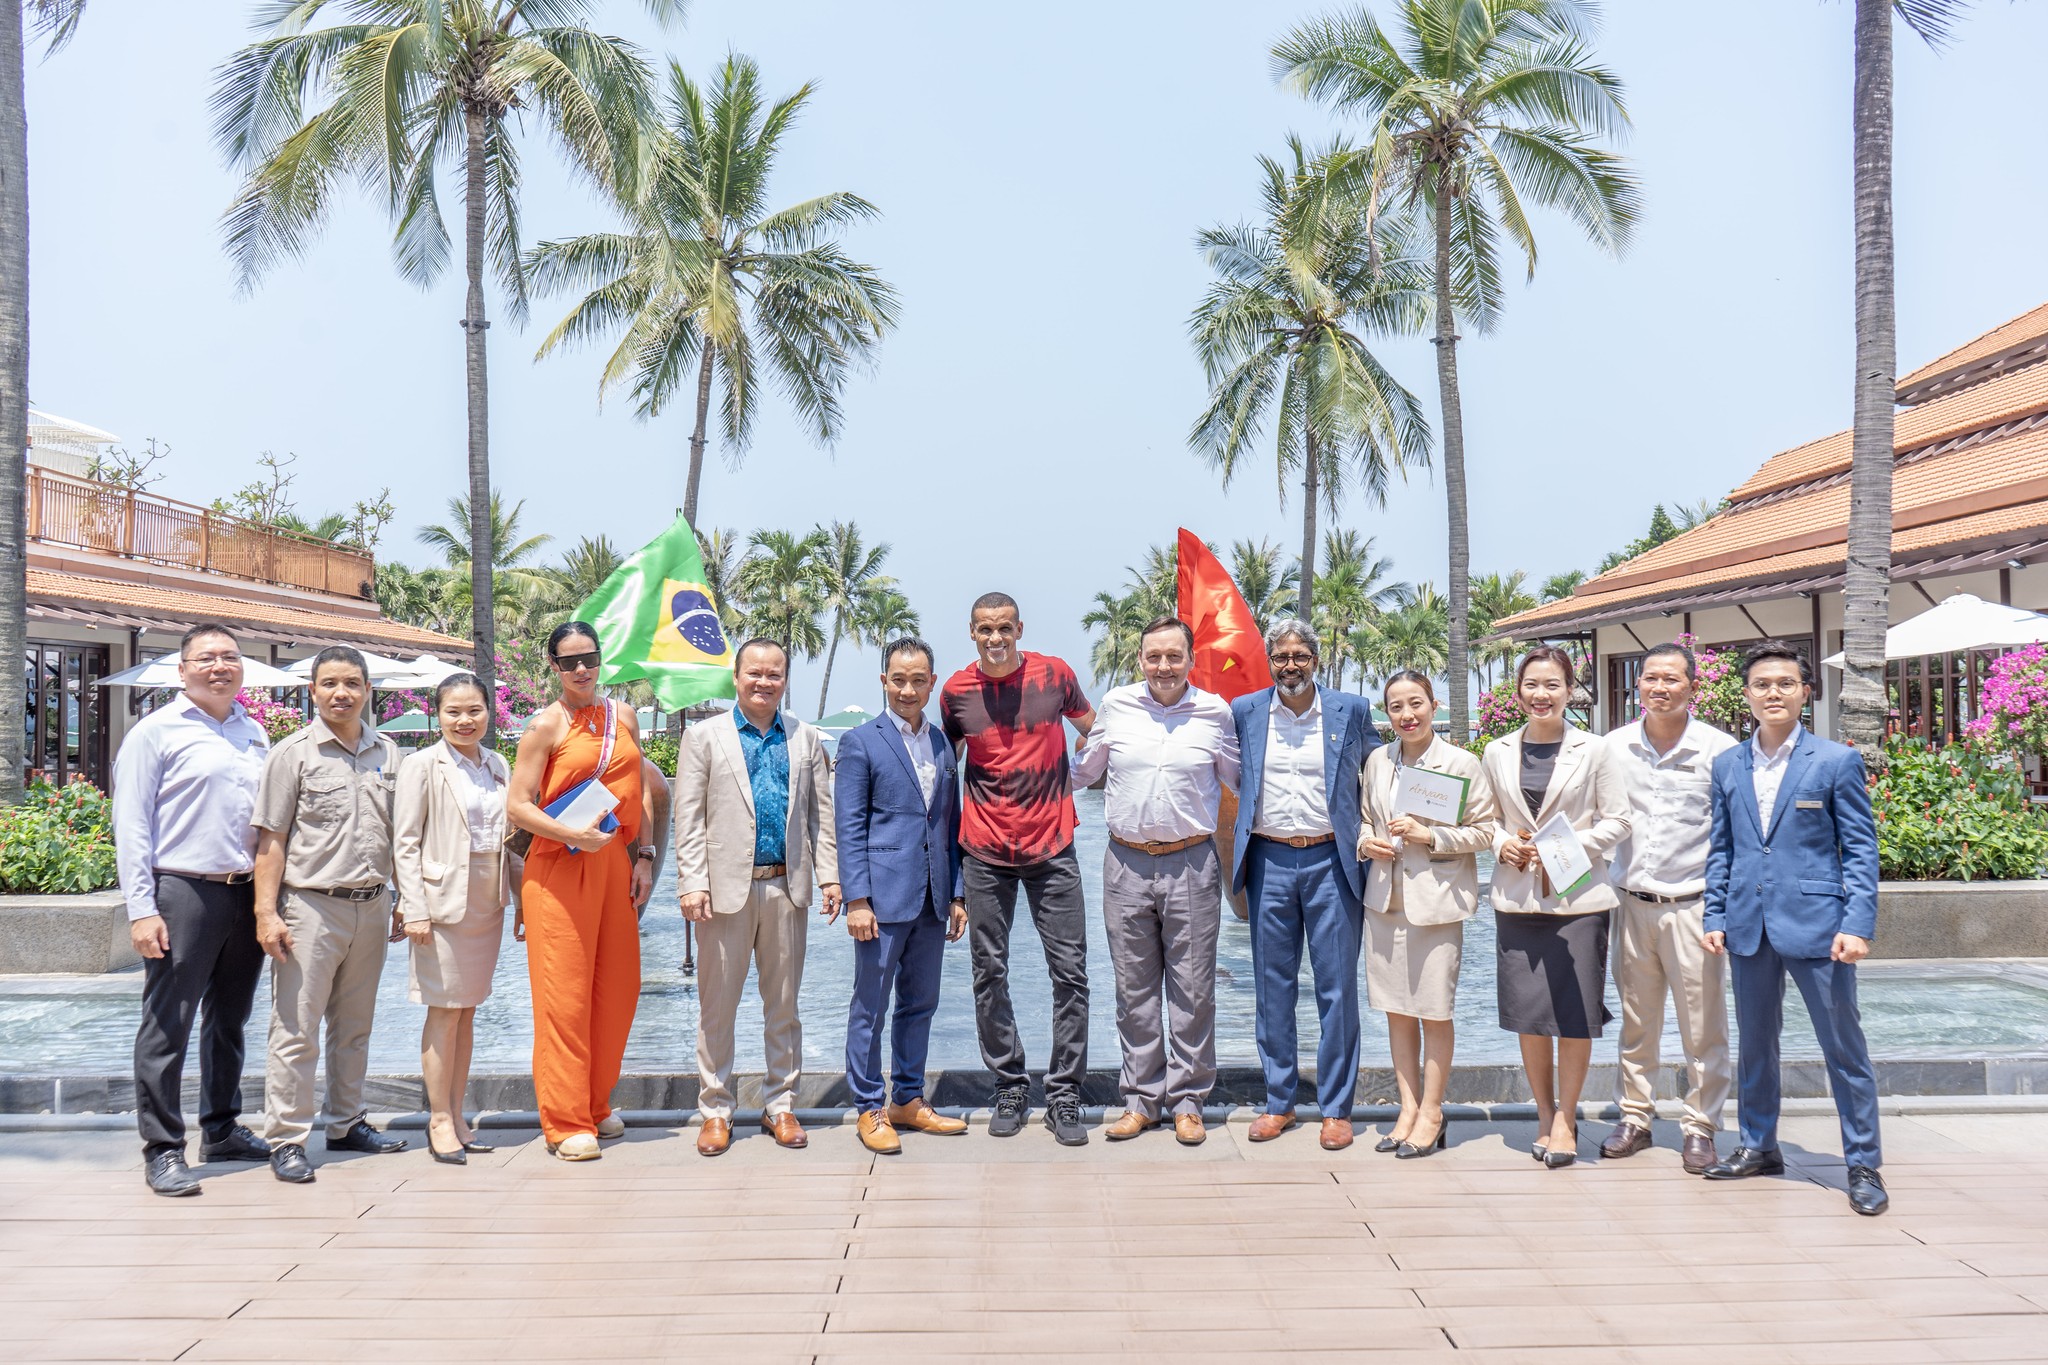 Các siêu sao bóng đá sẽ lưu trú tại khu nghỉ dưỡng di sản và ẩm thực bậc nhất Việt Nam, Furama Resort Đà Nẵng